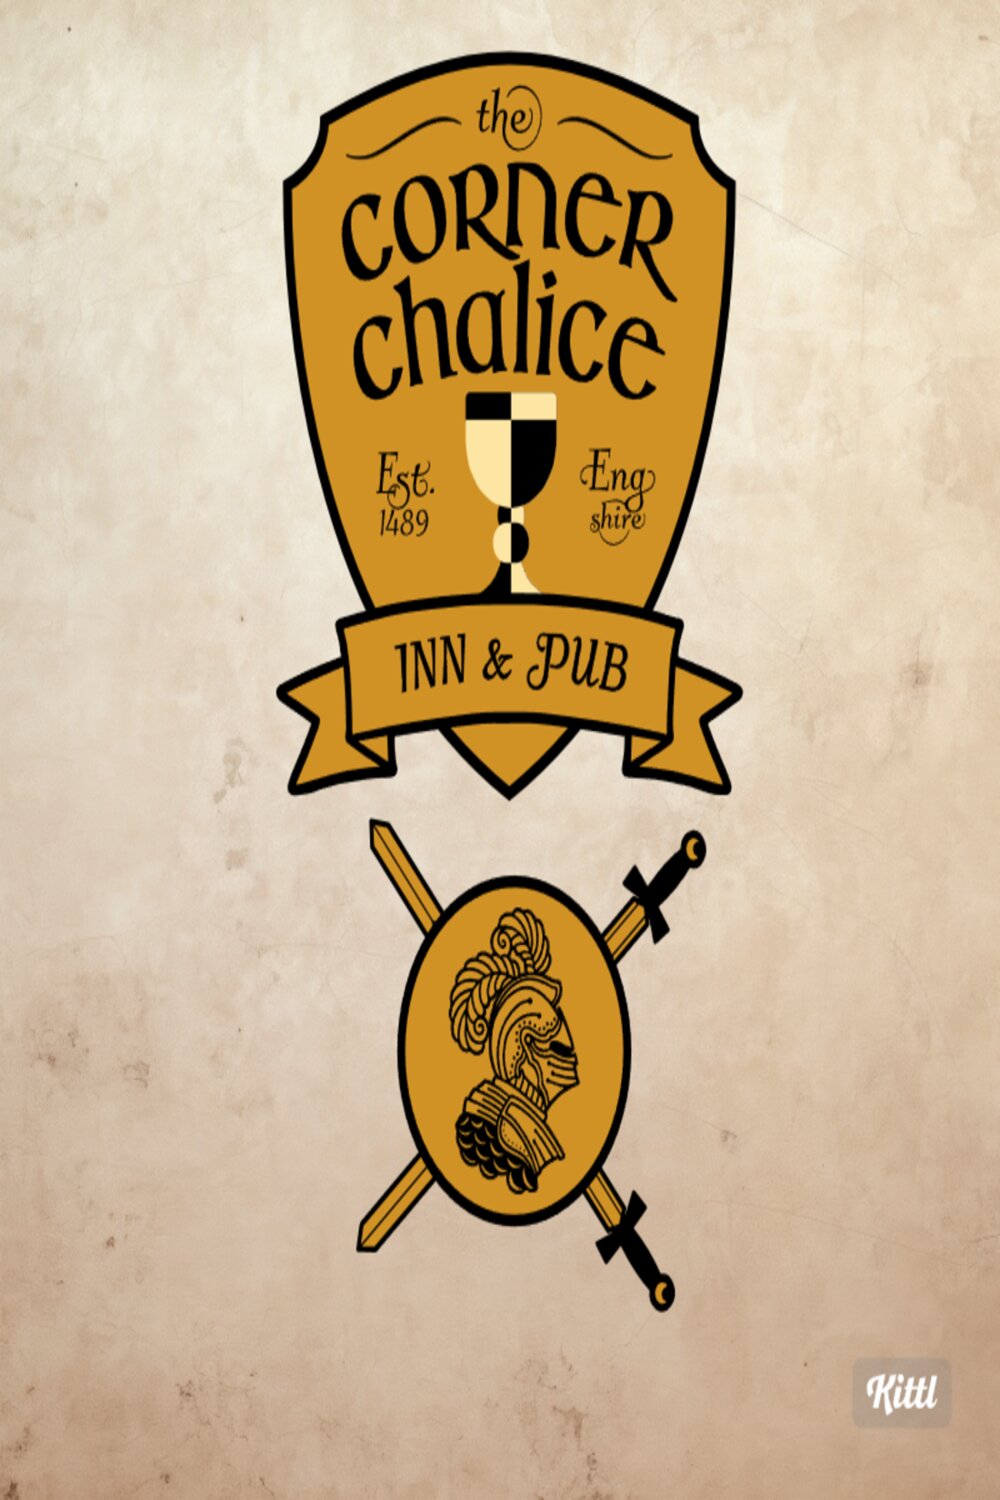 the corner chalice medieval logo 1 3 526